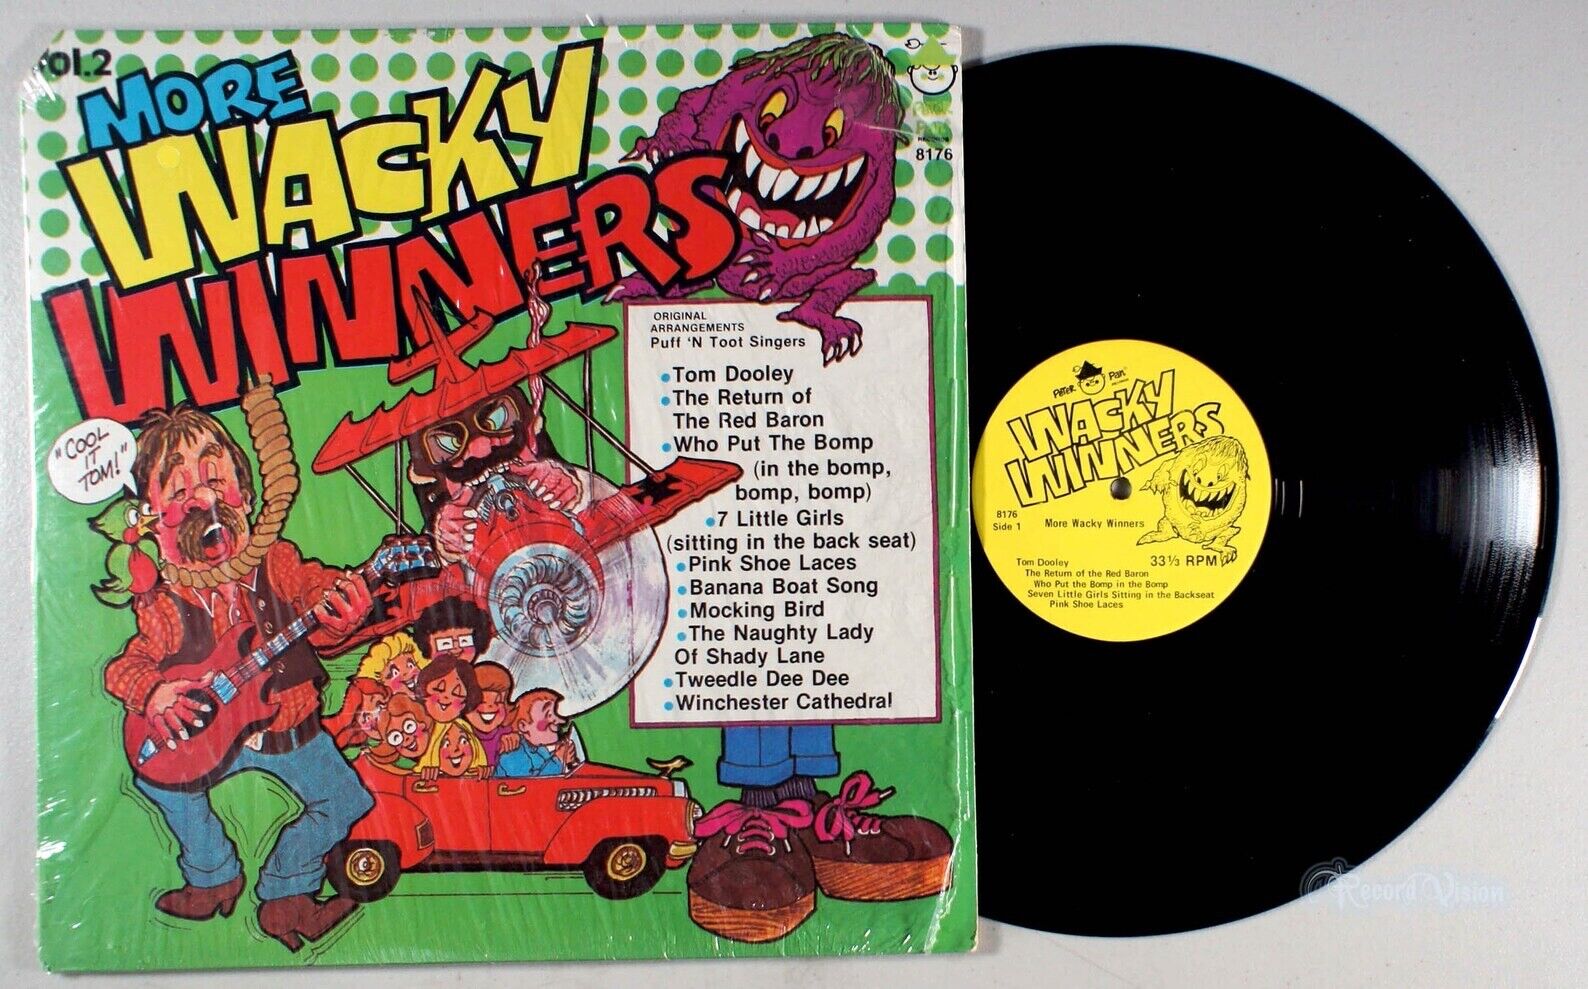 MORE WACKY WINNERS VOL 2 Puff n Toot Singers PETER PAN 8176 (1970) LP